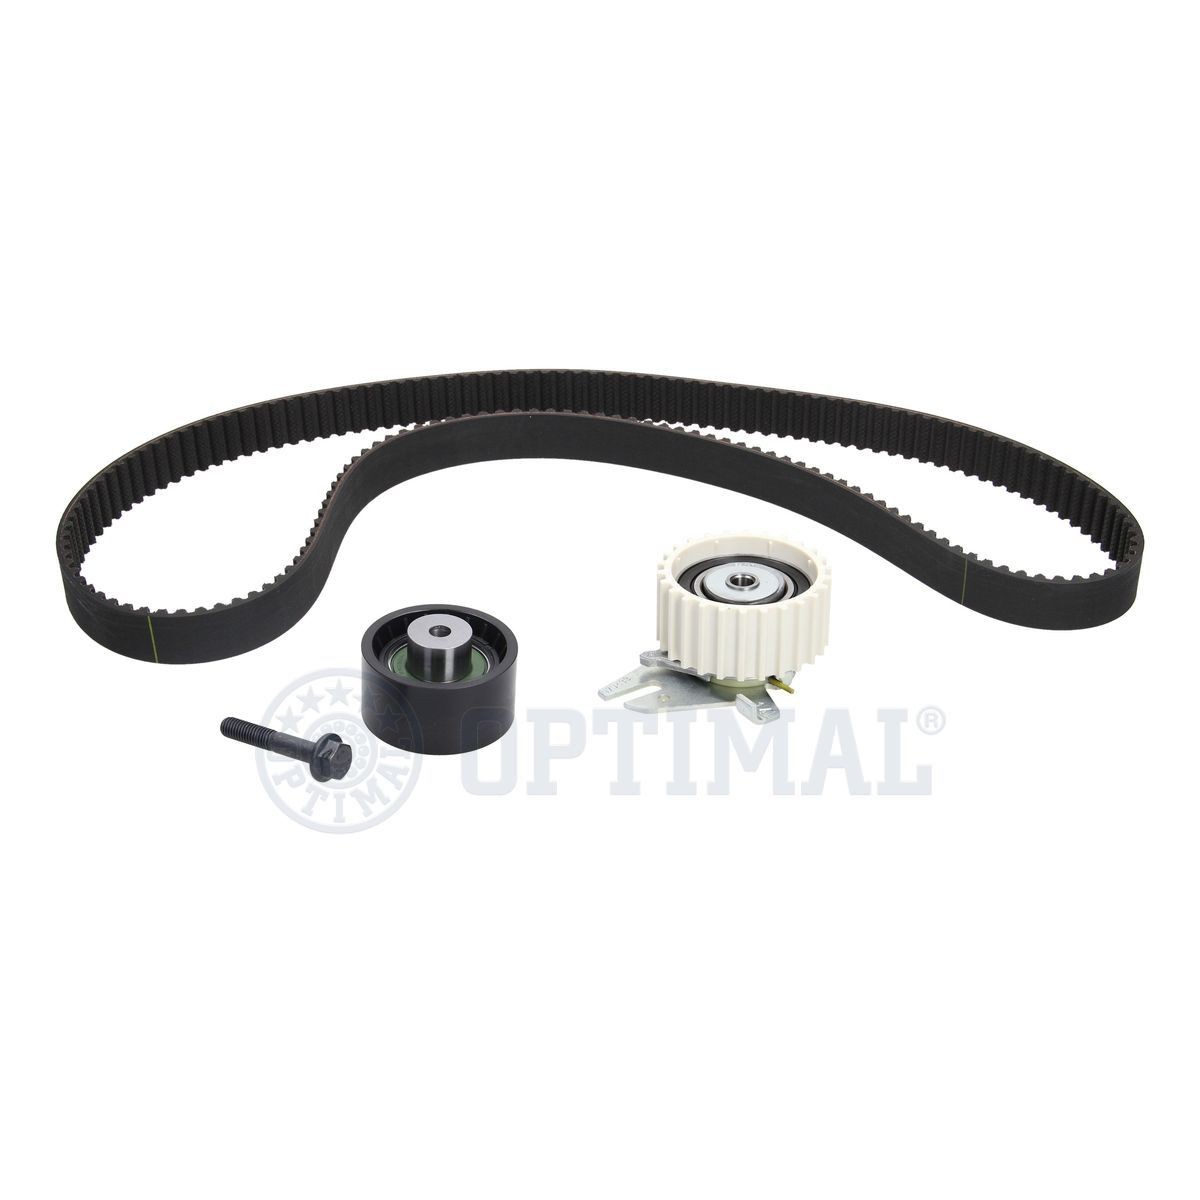 OPTIMAL SK-1697 Timing belt kit Number of Teeth: 163